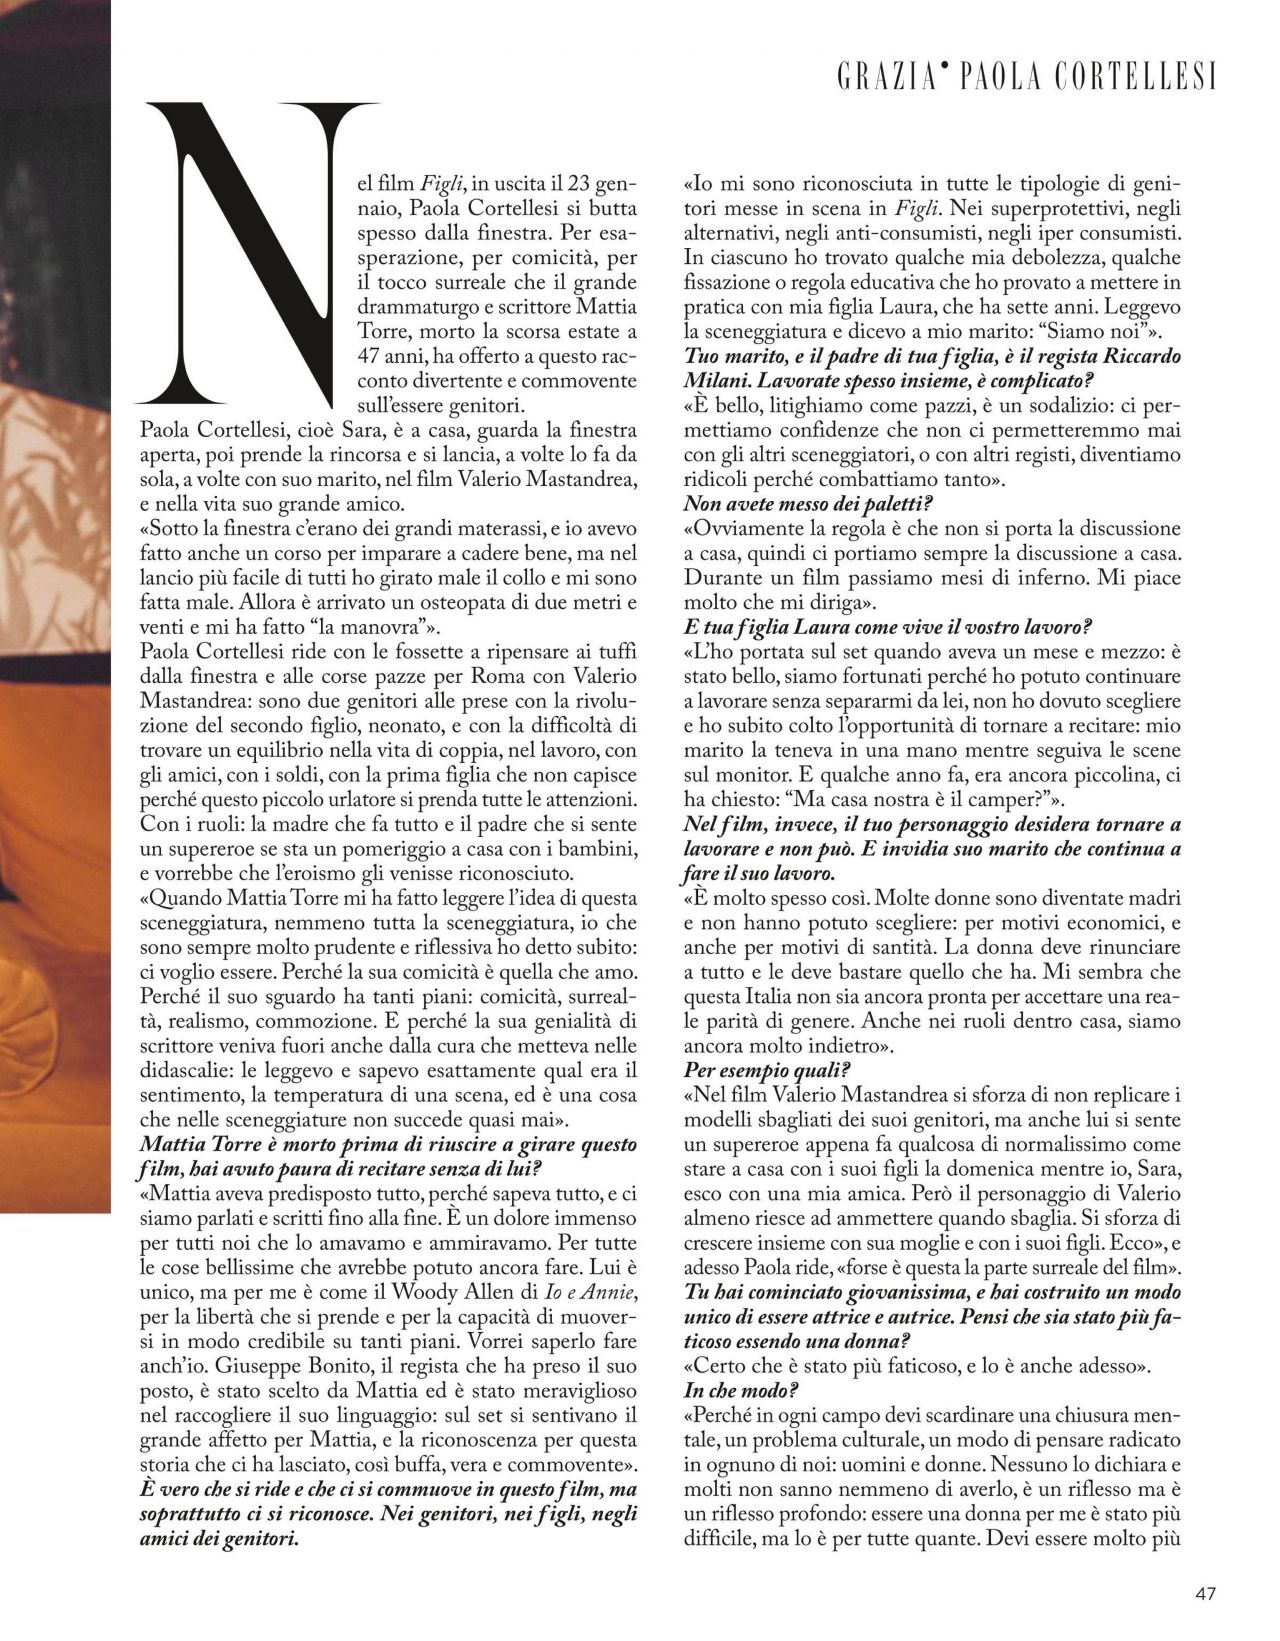 Paola Cortellesi - Grazia Magazine Italy 12/19/2019 • CelebMafia